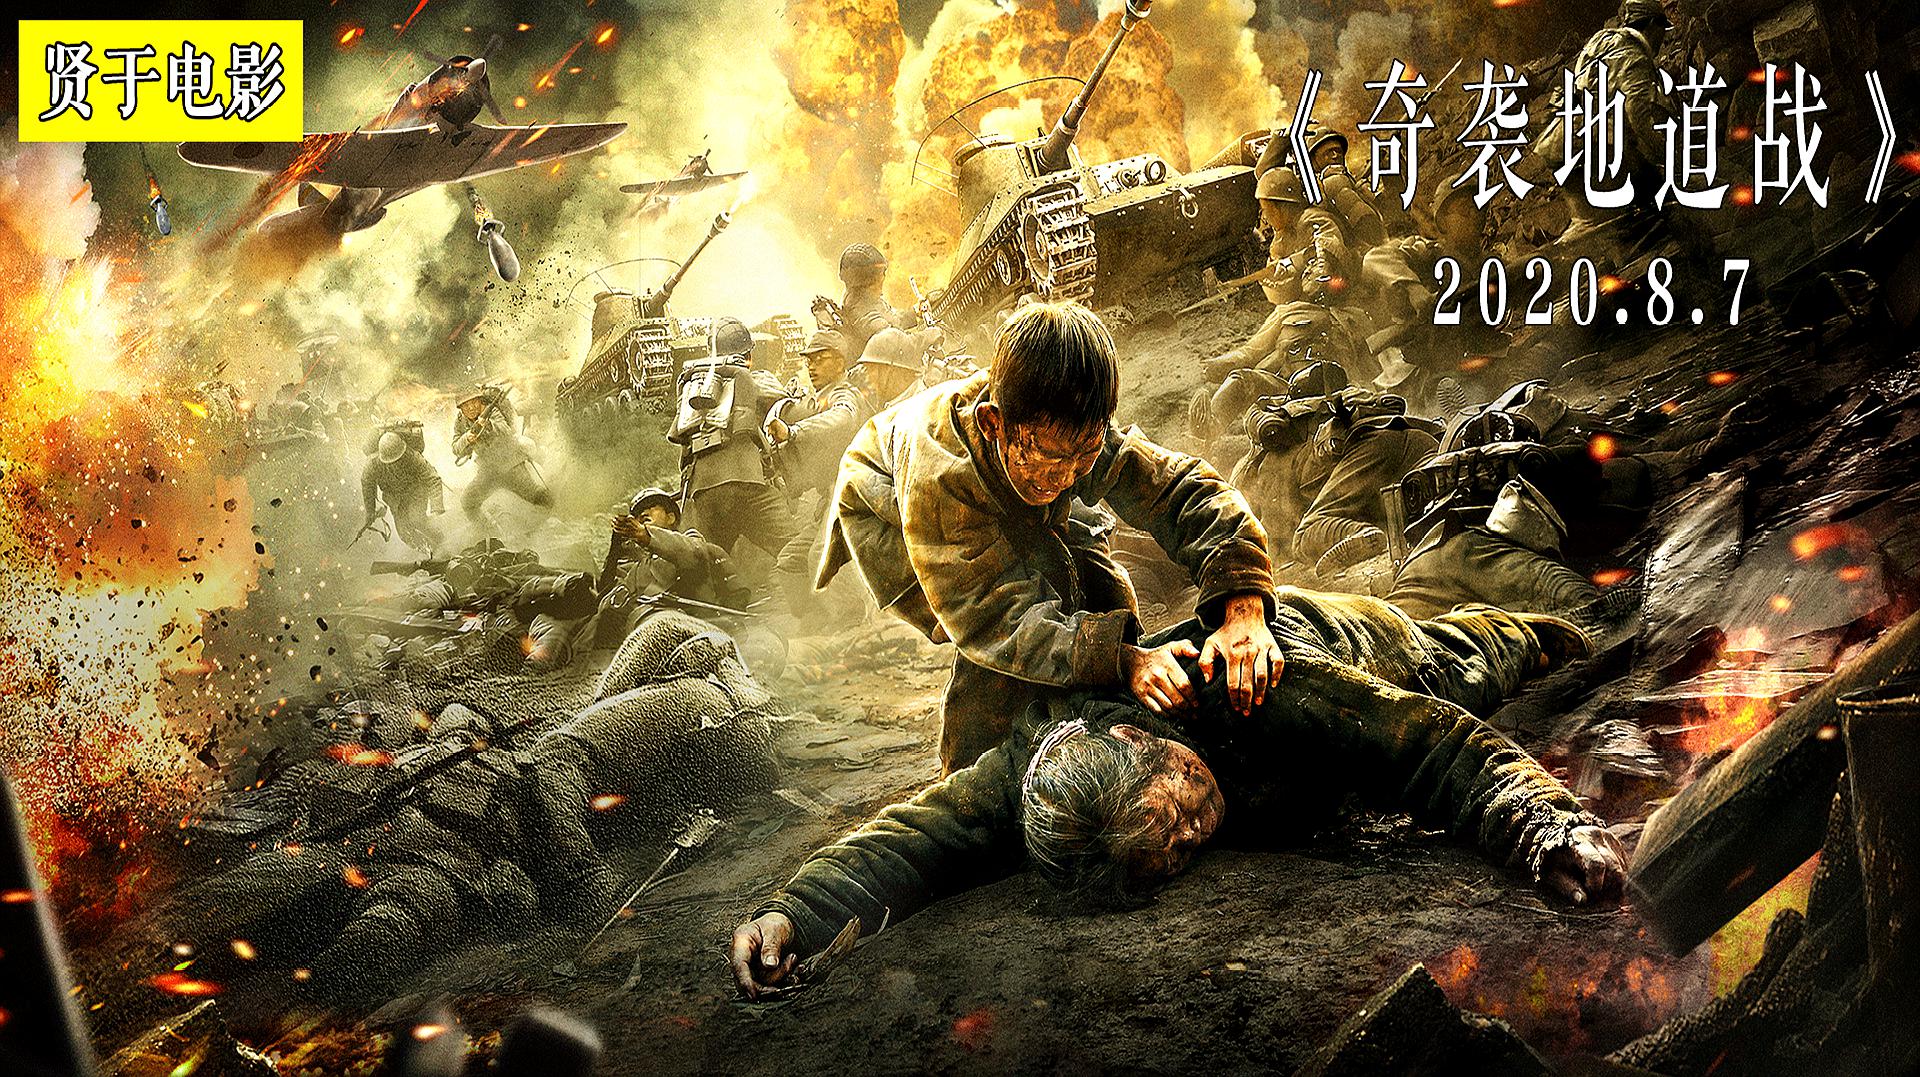 中国几大战争电影排行榜,网友们看过表示太赞了!